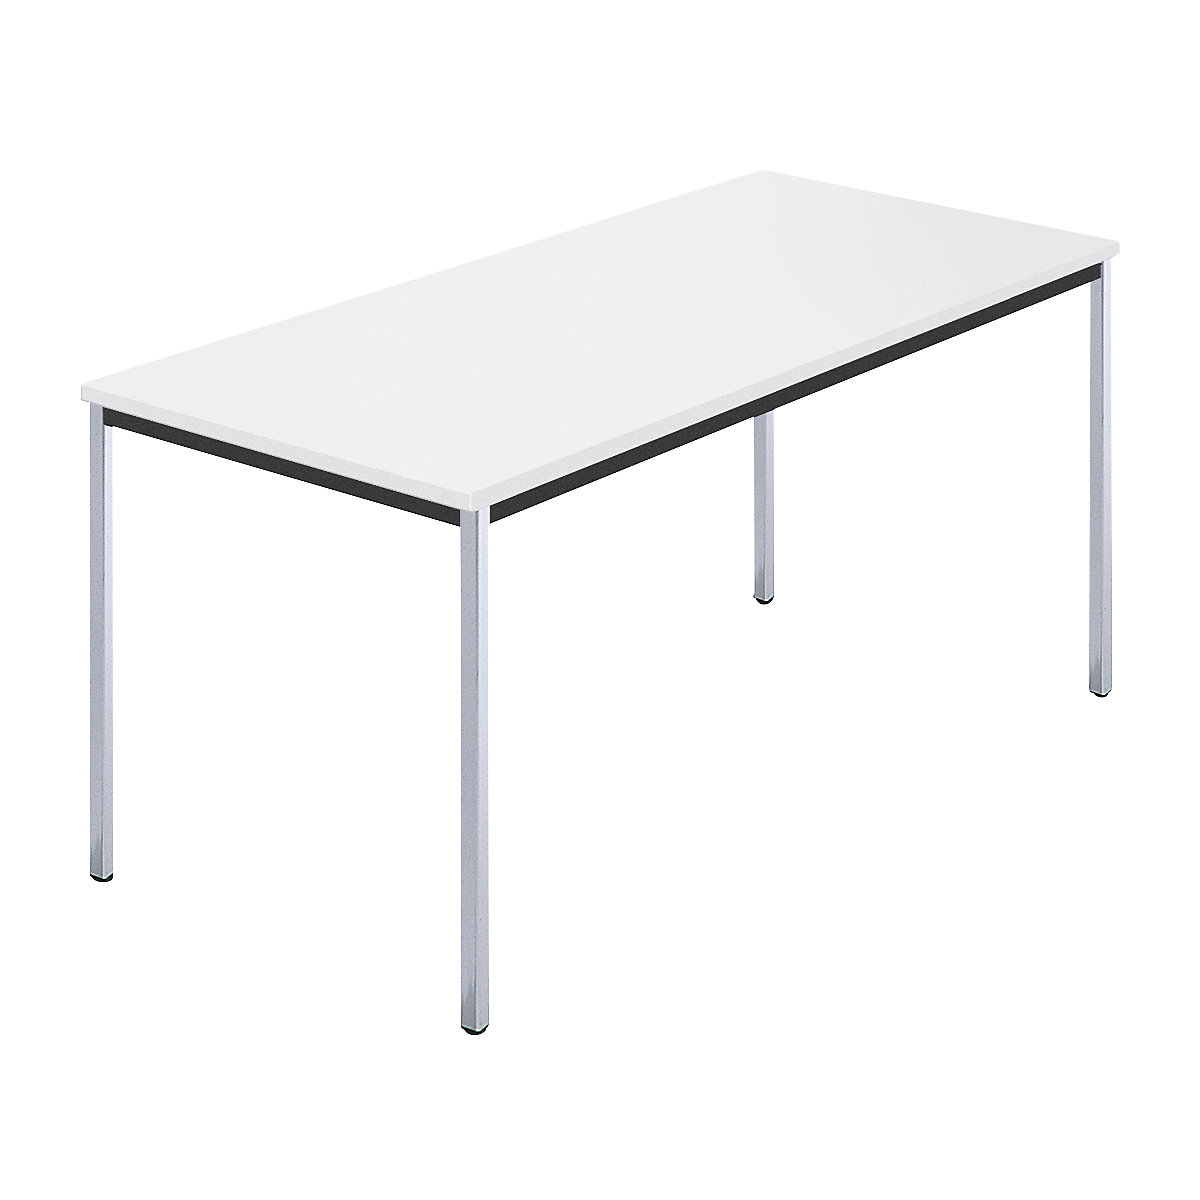 Rechthoekige tafel, met vierkante, verchroomde tafelpoten, b x d = 1500 x 800 mm, wit-5